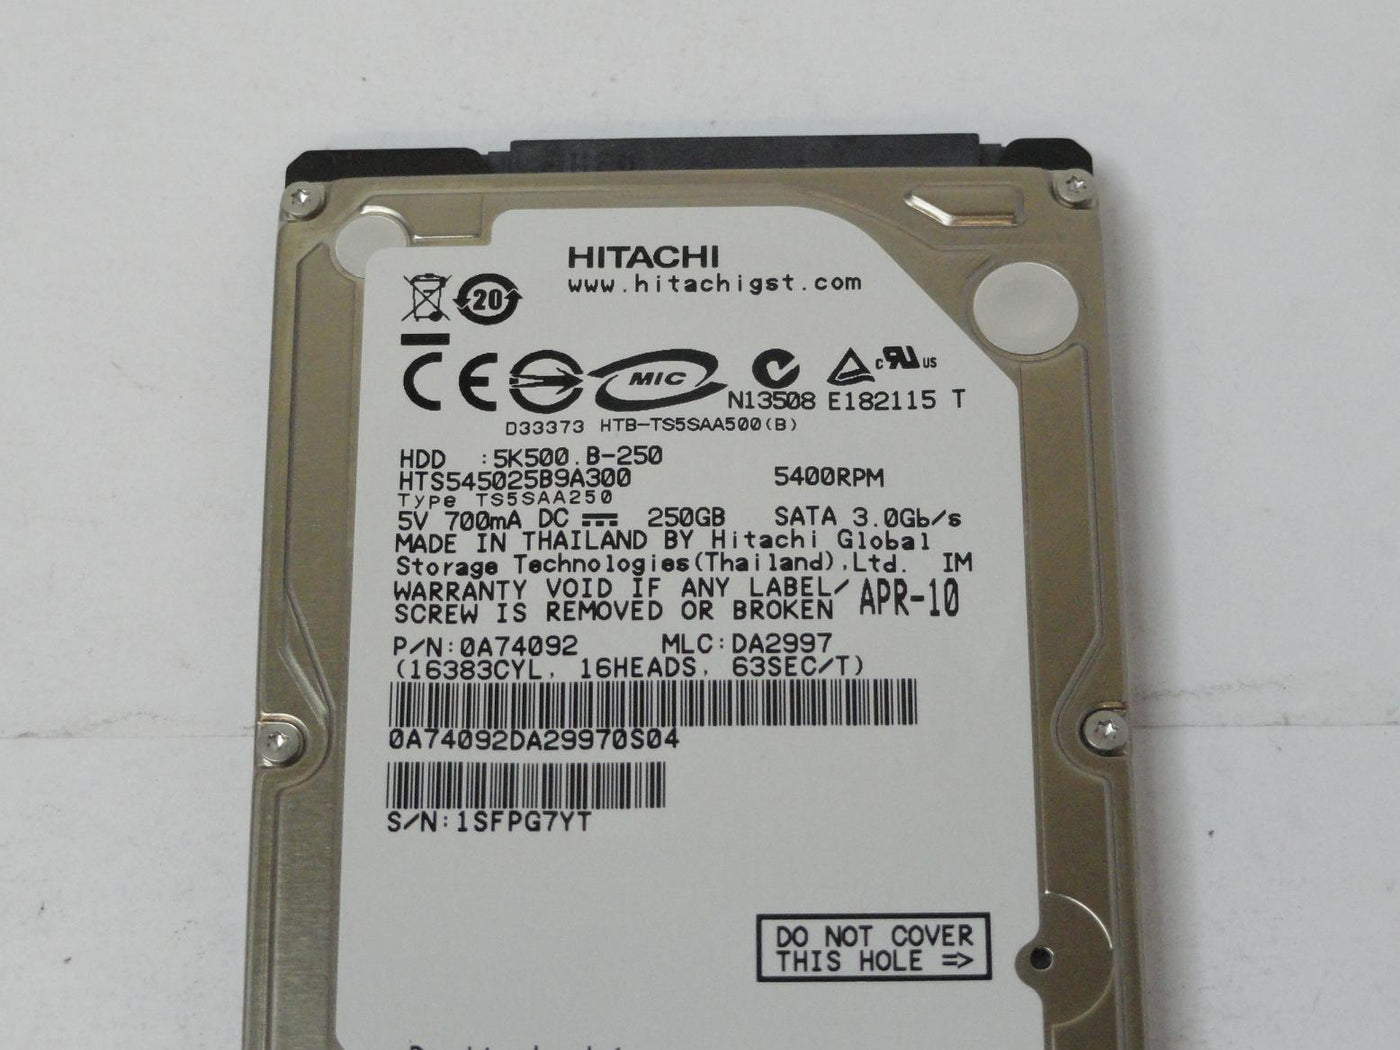 PR24676_0A74092_Hitachi 250GB SATA 5400rpm 2.5in HDD - Image3